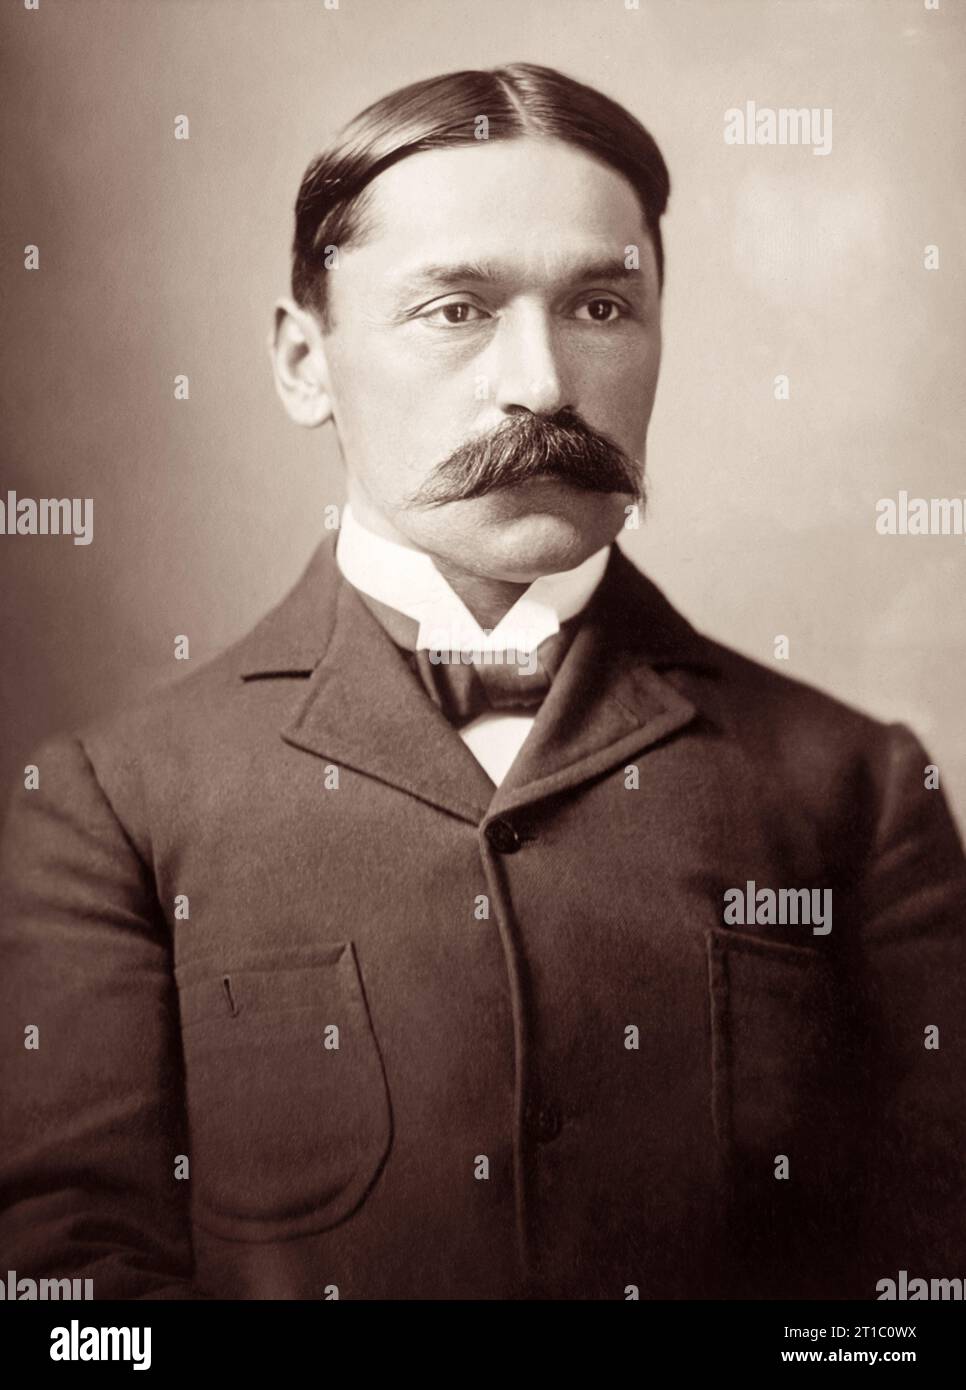 Le scientifique serbe Mihaljo Idvorski Pupin (1858-1935) était professeur à l'Université Columbia, membre fondateur de la NACA (prédécesseur de la NASA), philanthrope et inventeur scientifique titulaire de nombreux brevets. Banque D'Images